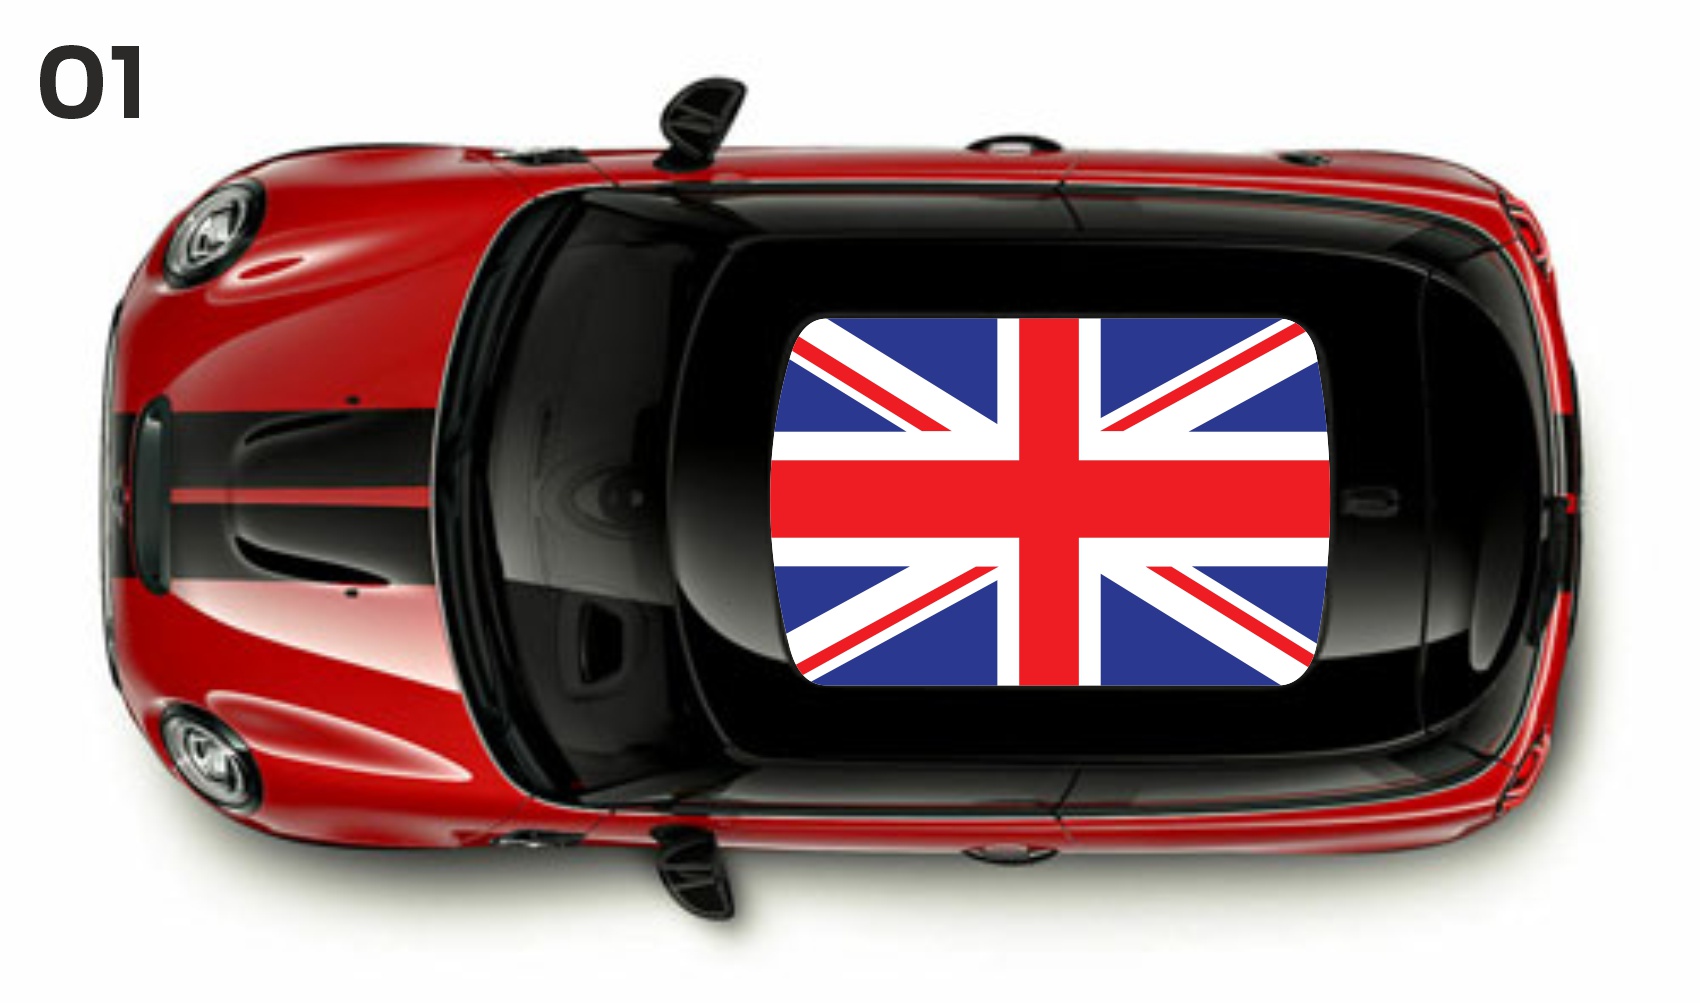 Mini osobowe flaga na dach UK Wielka Brytania naklejki decals stripes sticker aufkleber nalepky samolepky tuning